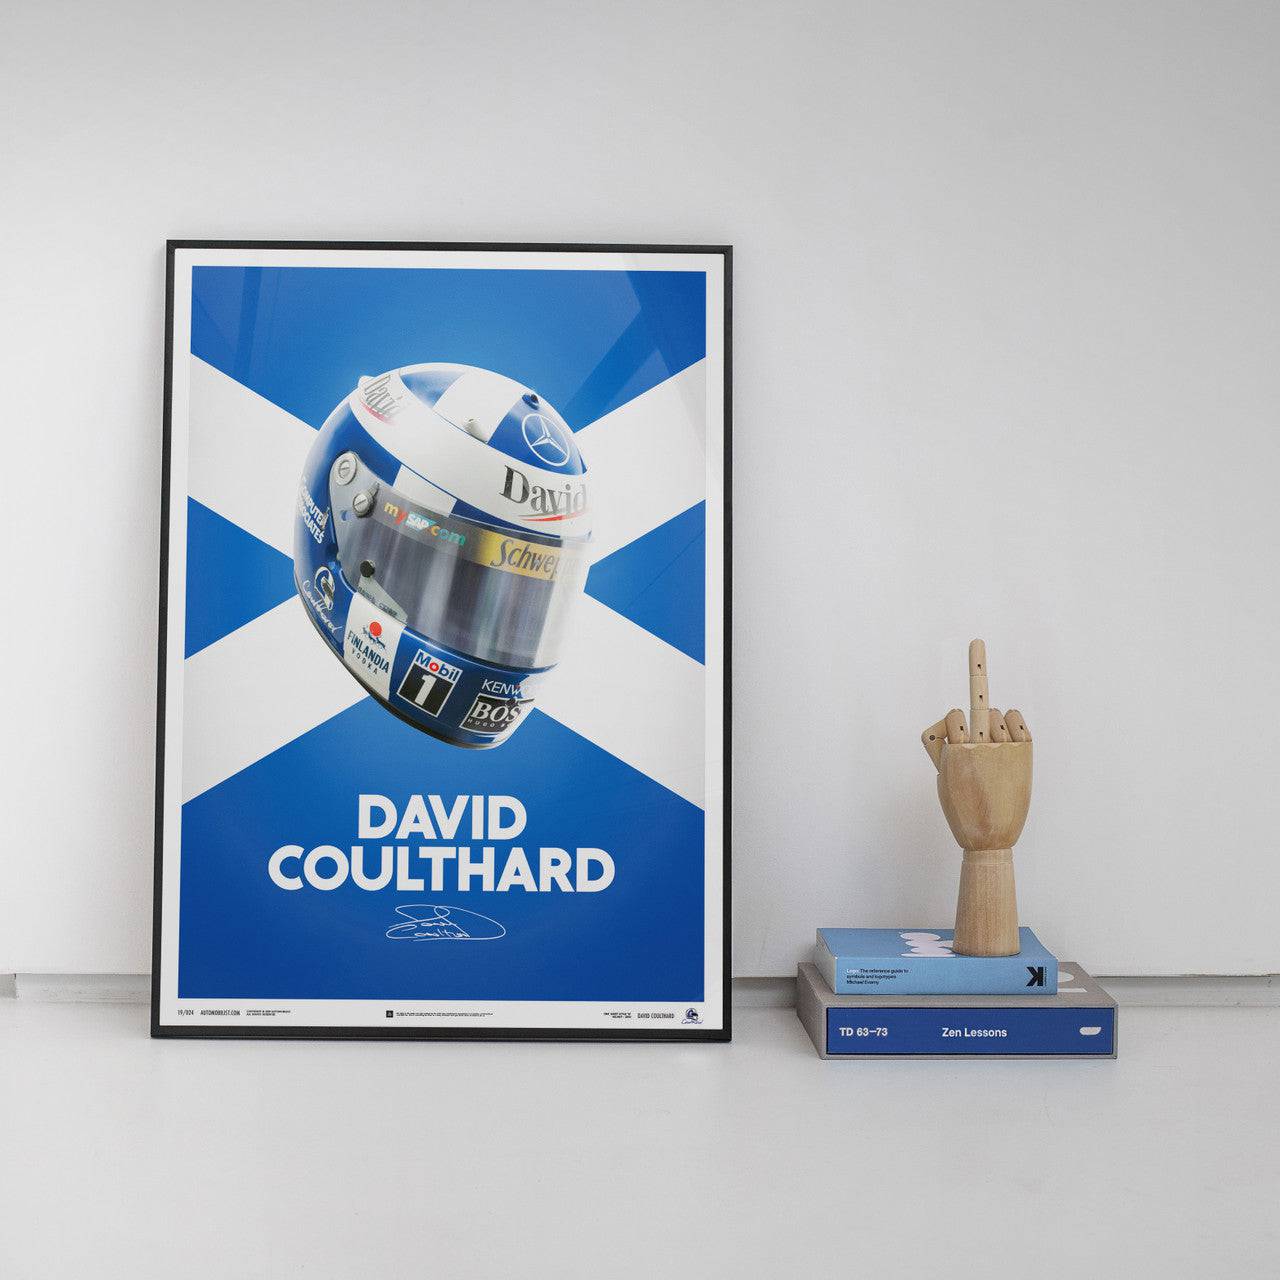 David Coulthard - Helmet - 2000 - Poster